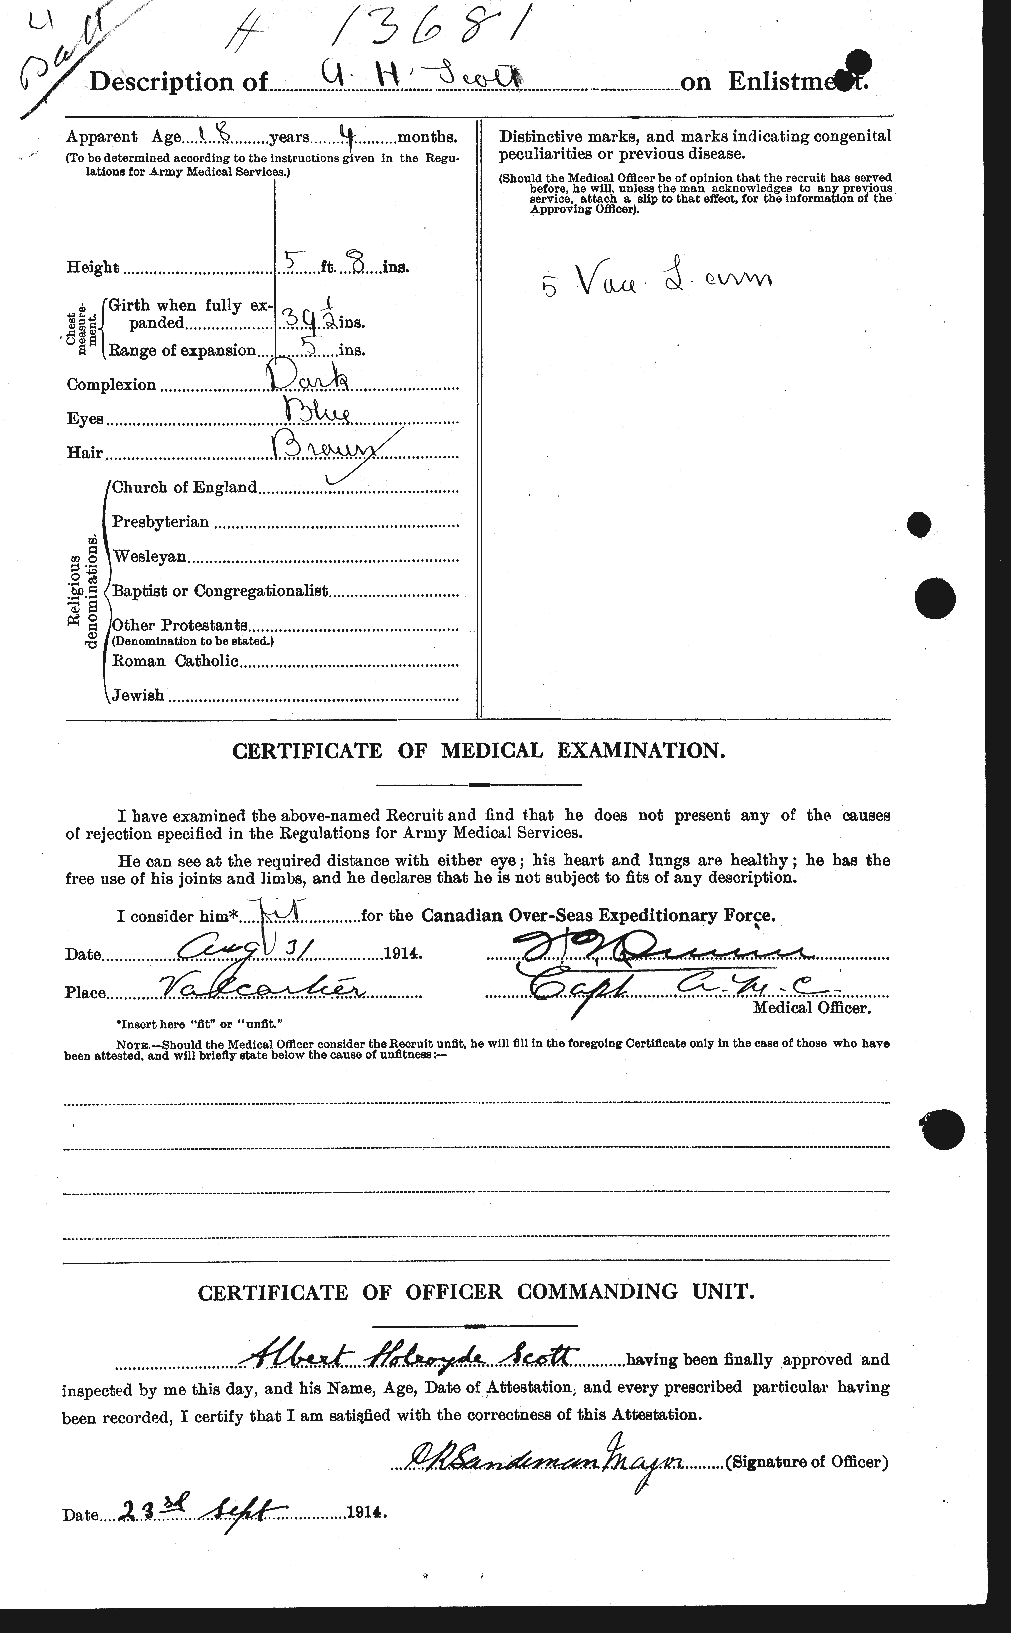 Dossiers du Personnel de la Première Guerre mondiale - CEC 086844b